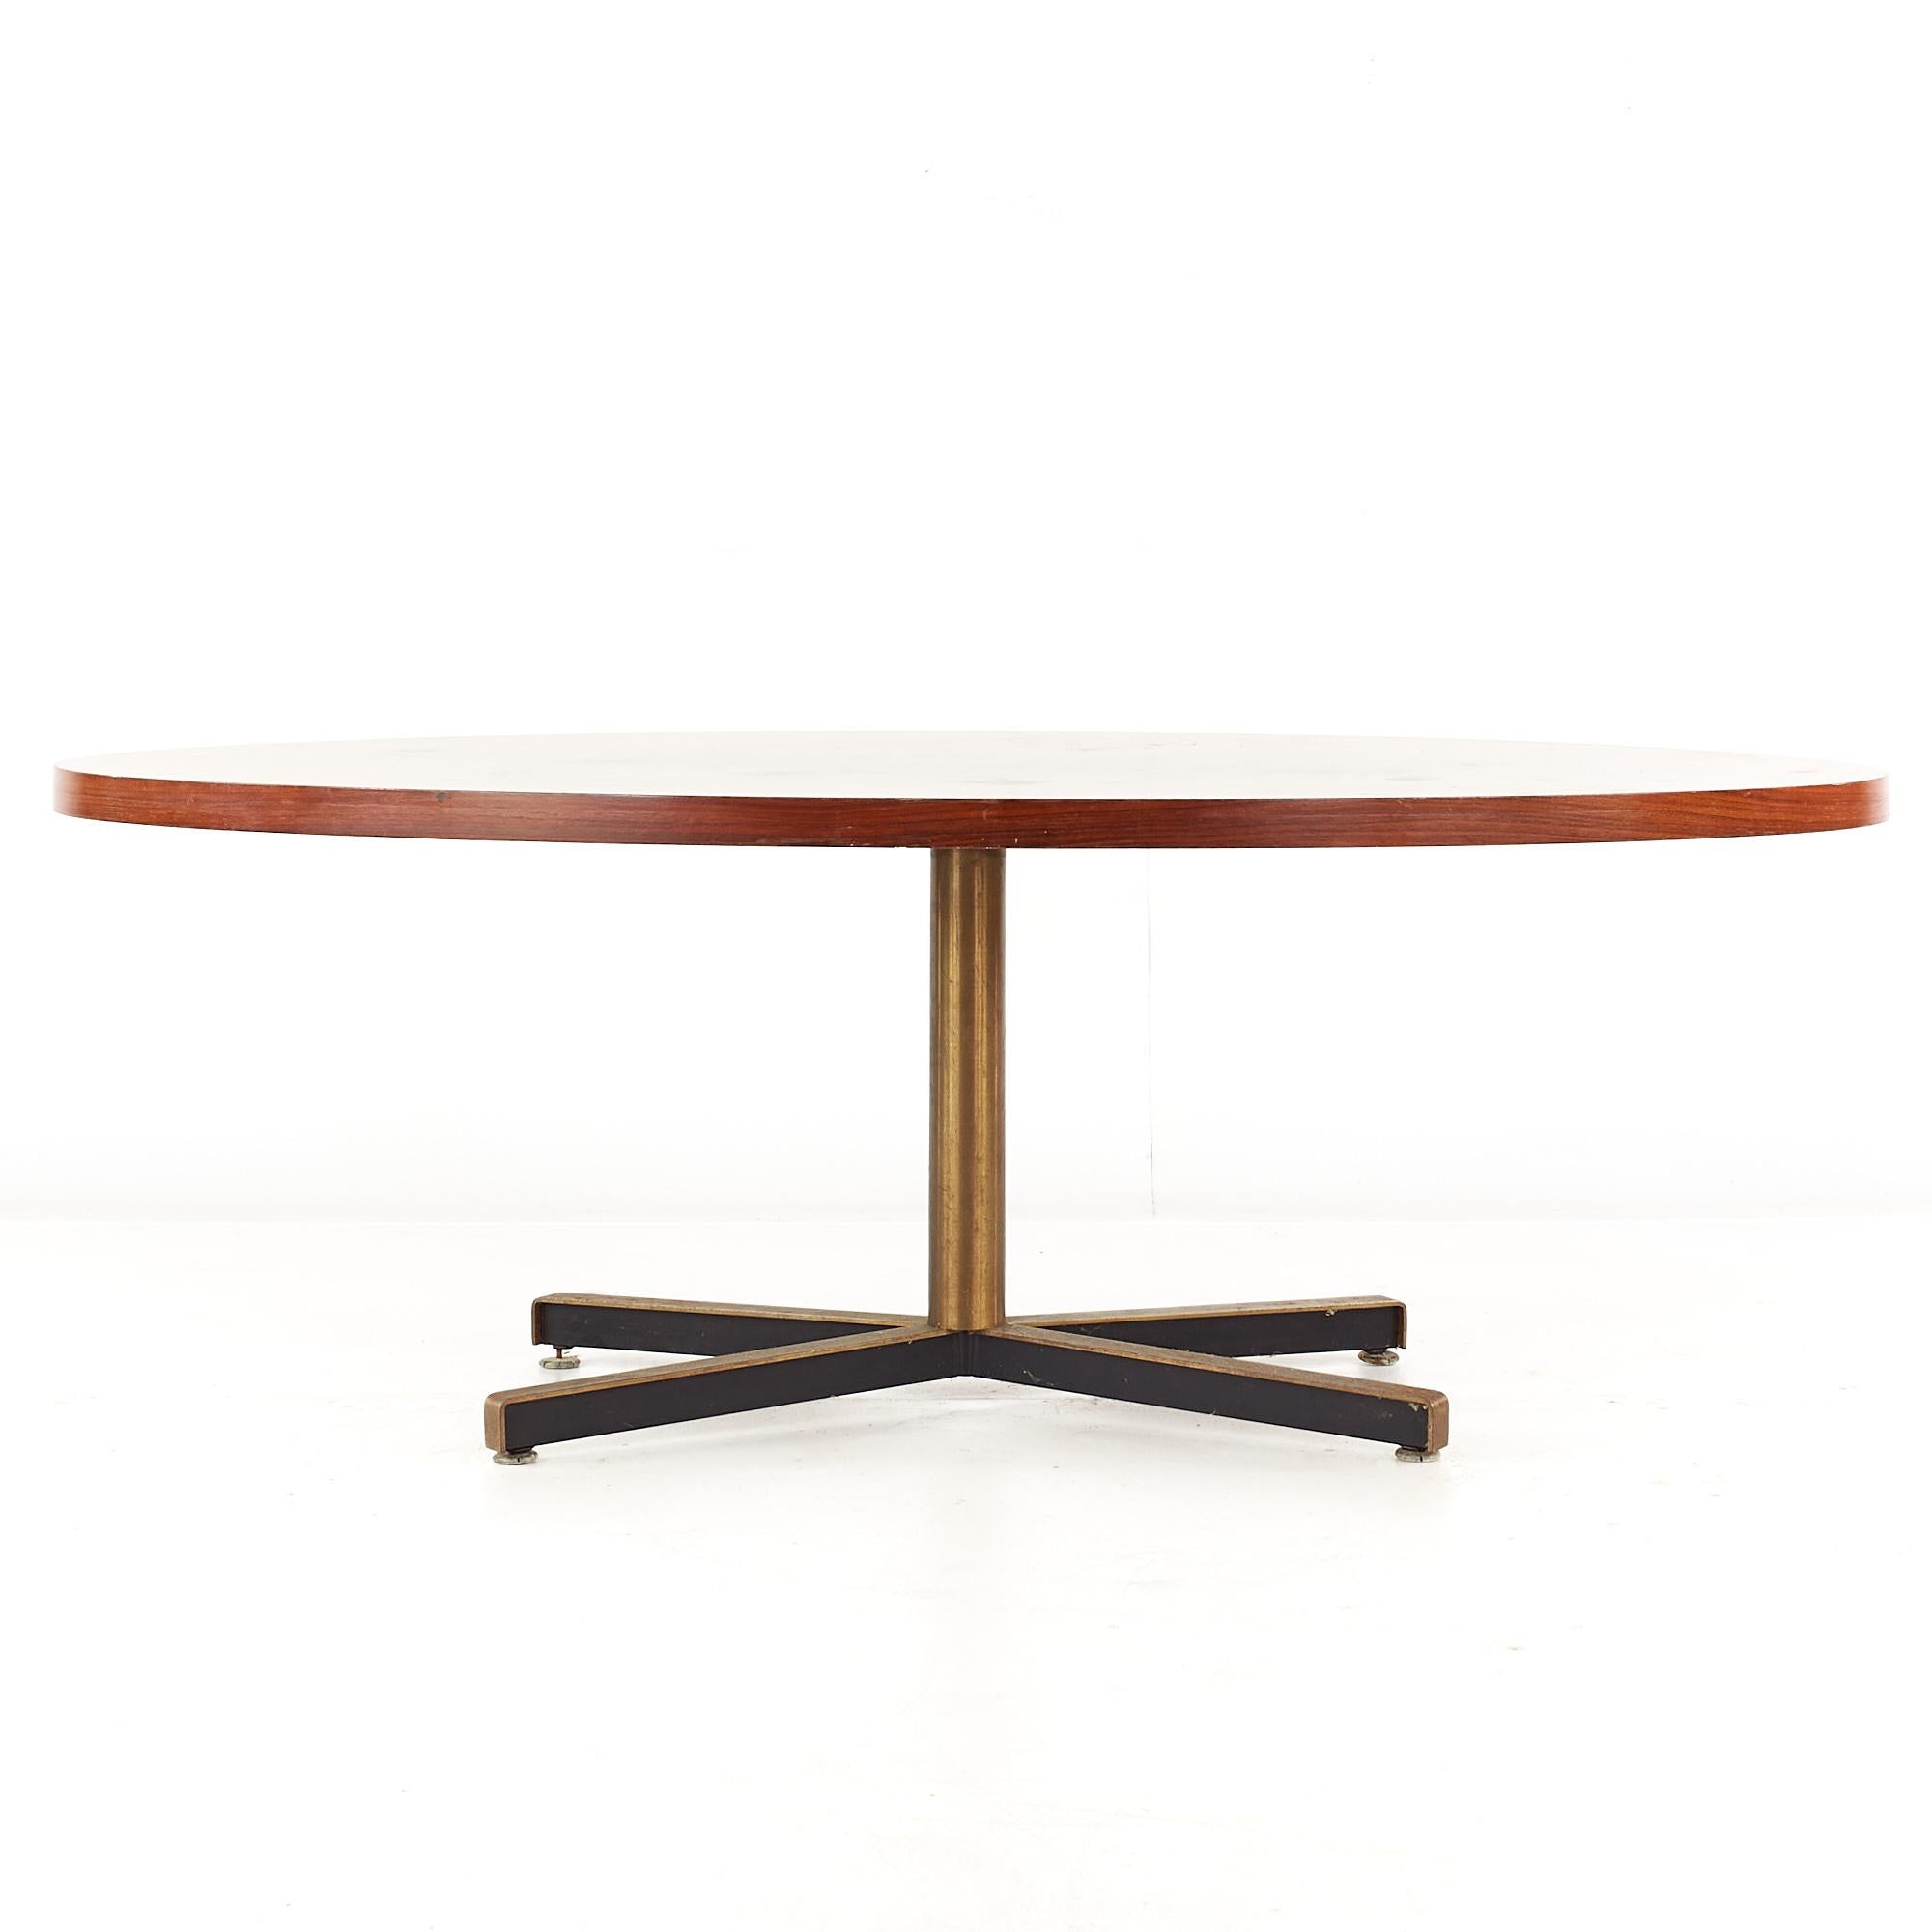 Florence Knoll Style Mid Century Esstisch aus Palisander und Messing.

Dieser Esstisch misst: 84 breit x 42 tief x 28,5 hoch, mit einem Stuhl Abstand von 26,25 Zoll.

Alle Möbelstücke sind in einem so genannten restaurierten Vintage-Zustand zu